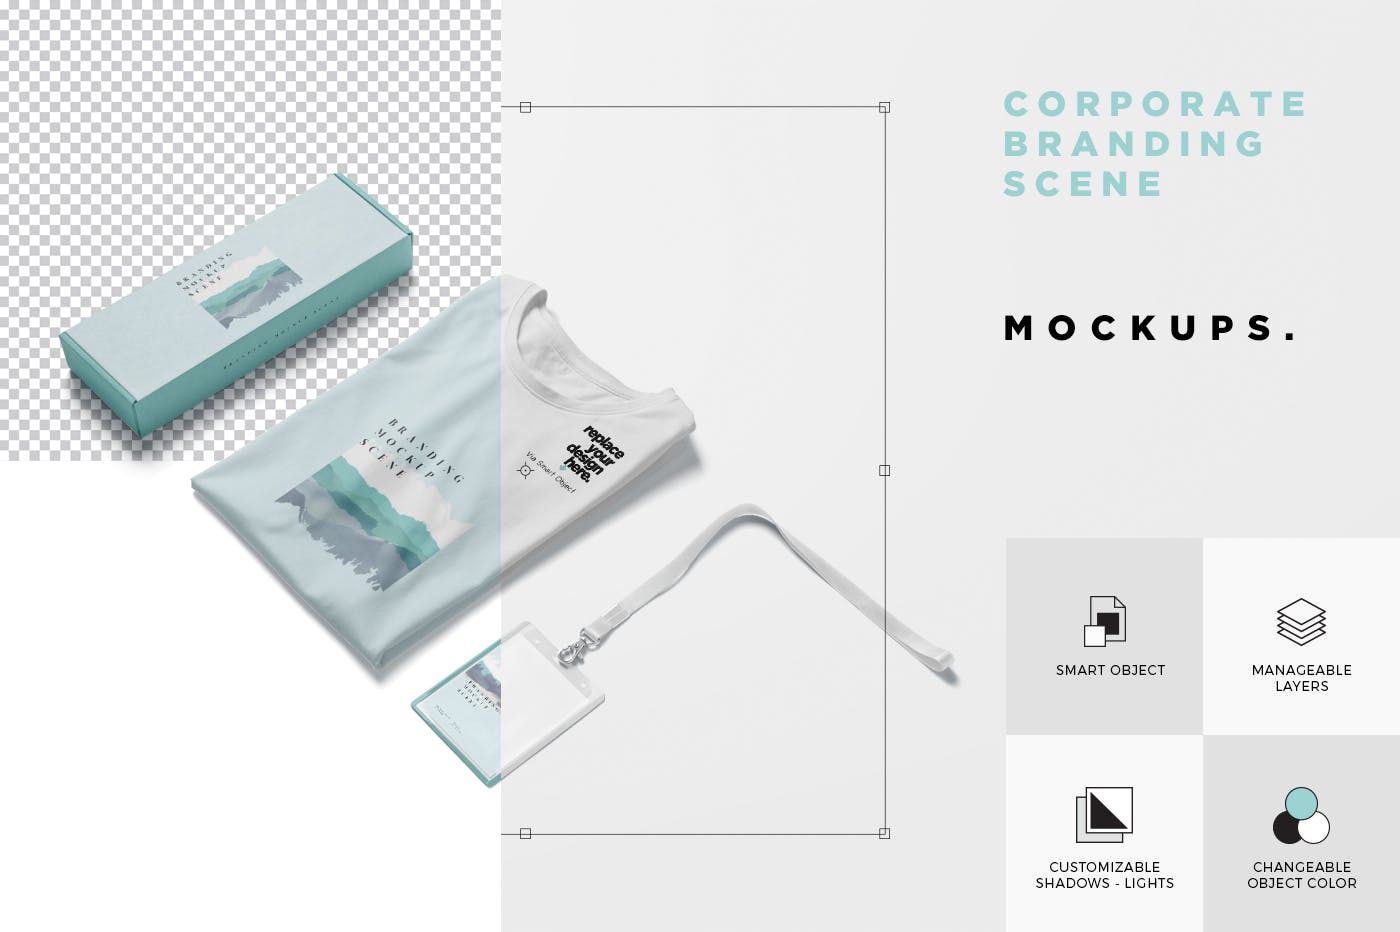 企业VI设计效果图预览样机模板 Corporate Branding Mockup Scenes插图(5)